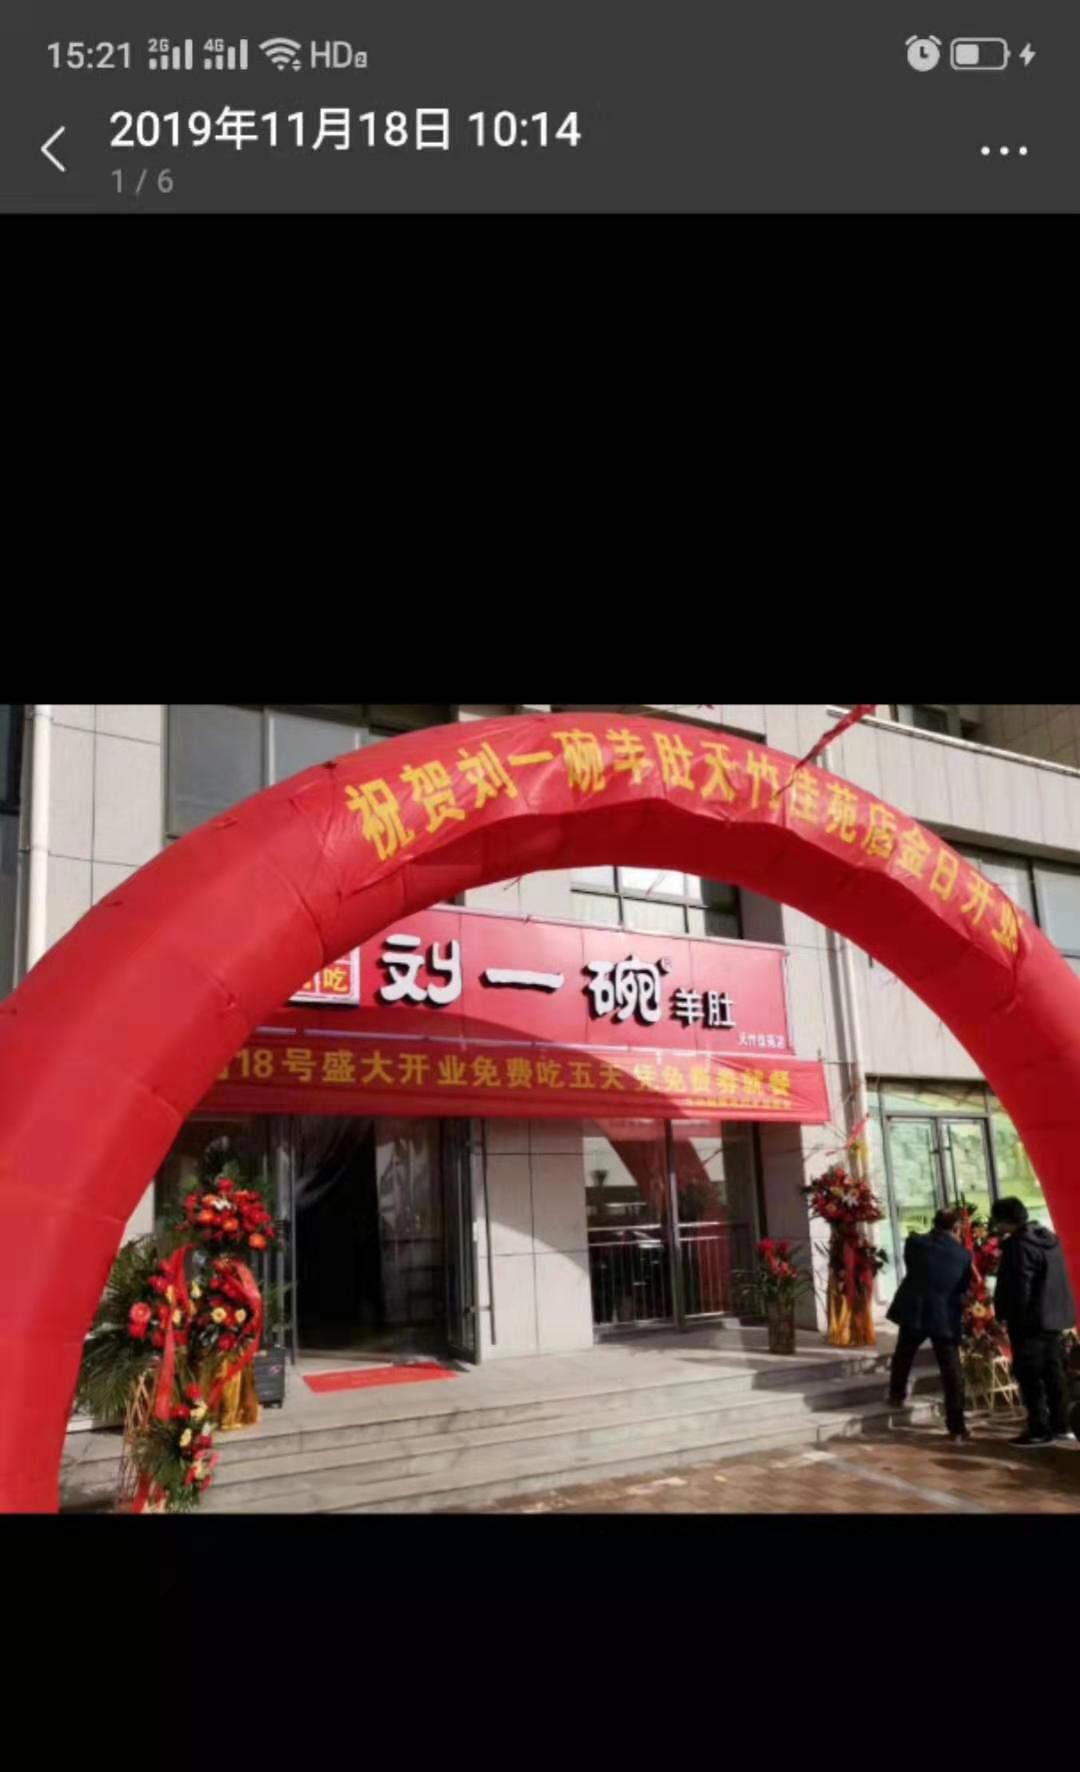 刘一碗泰安天竺峰店于2019年11月18日盛大开业，祝开业大吉！